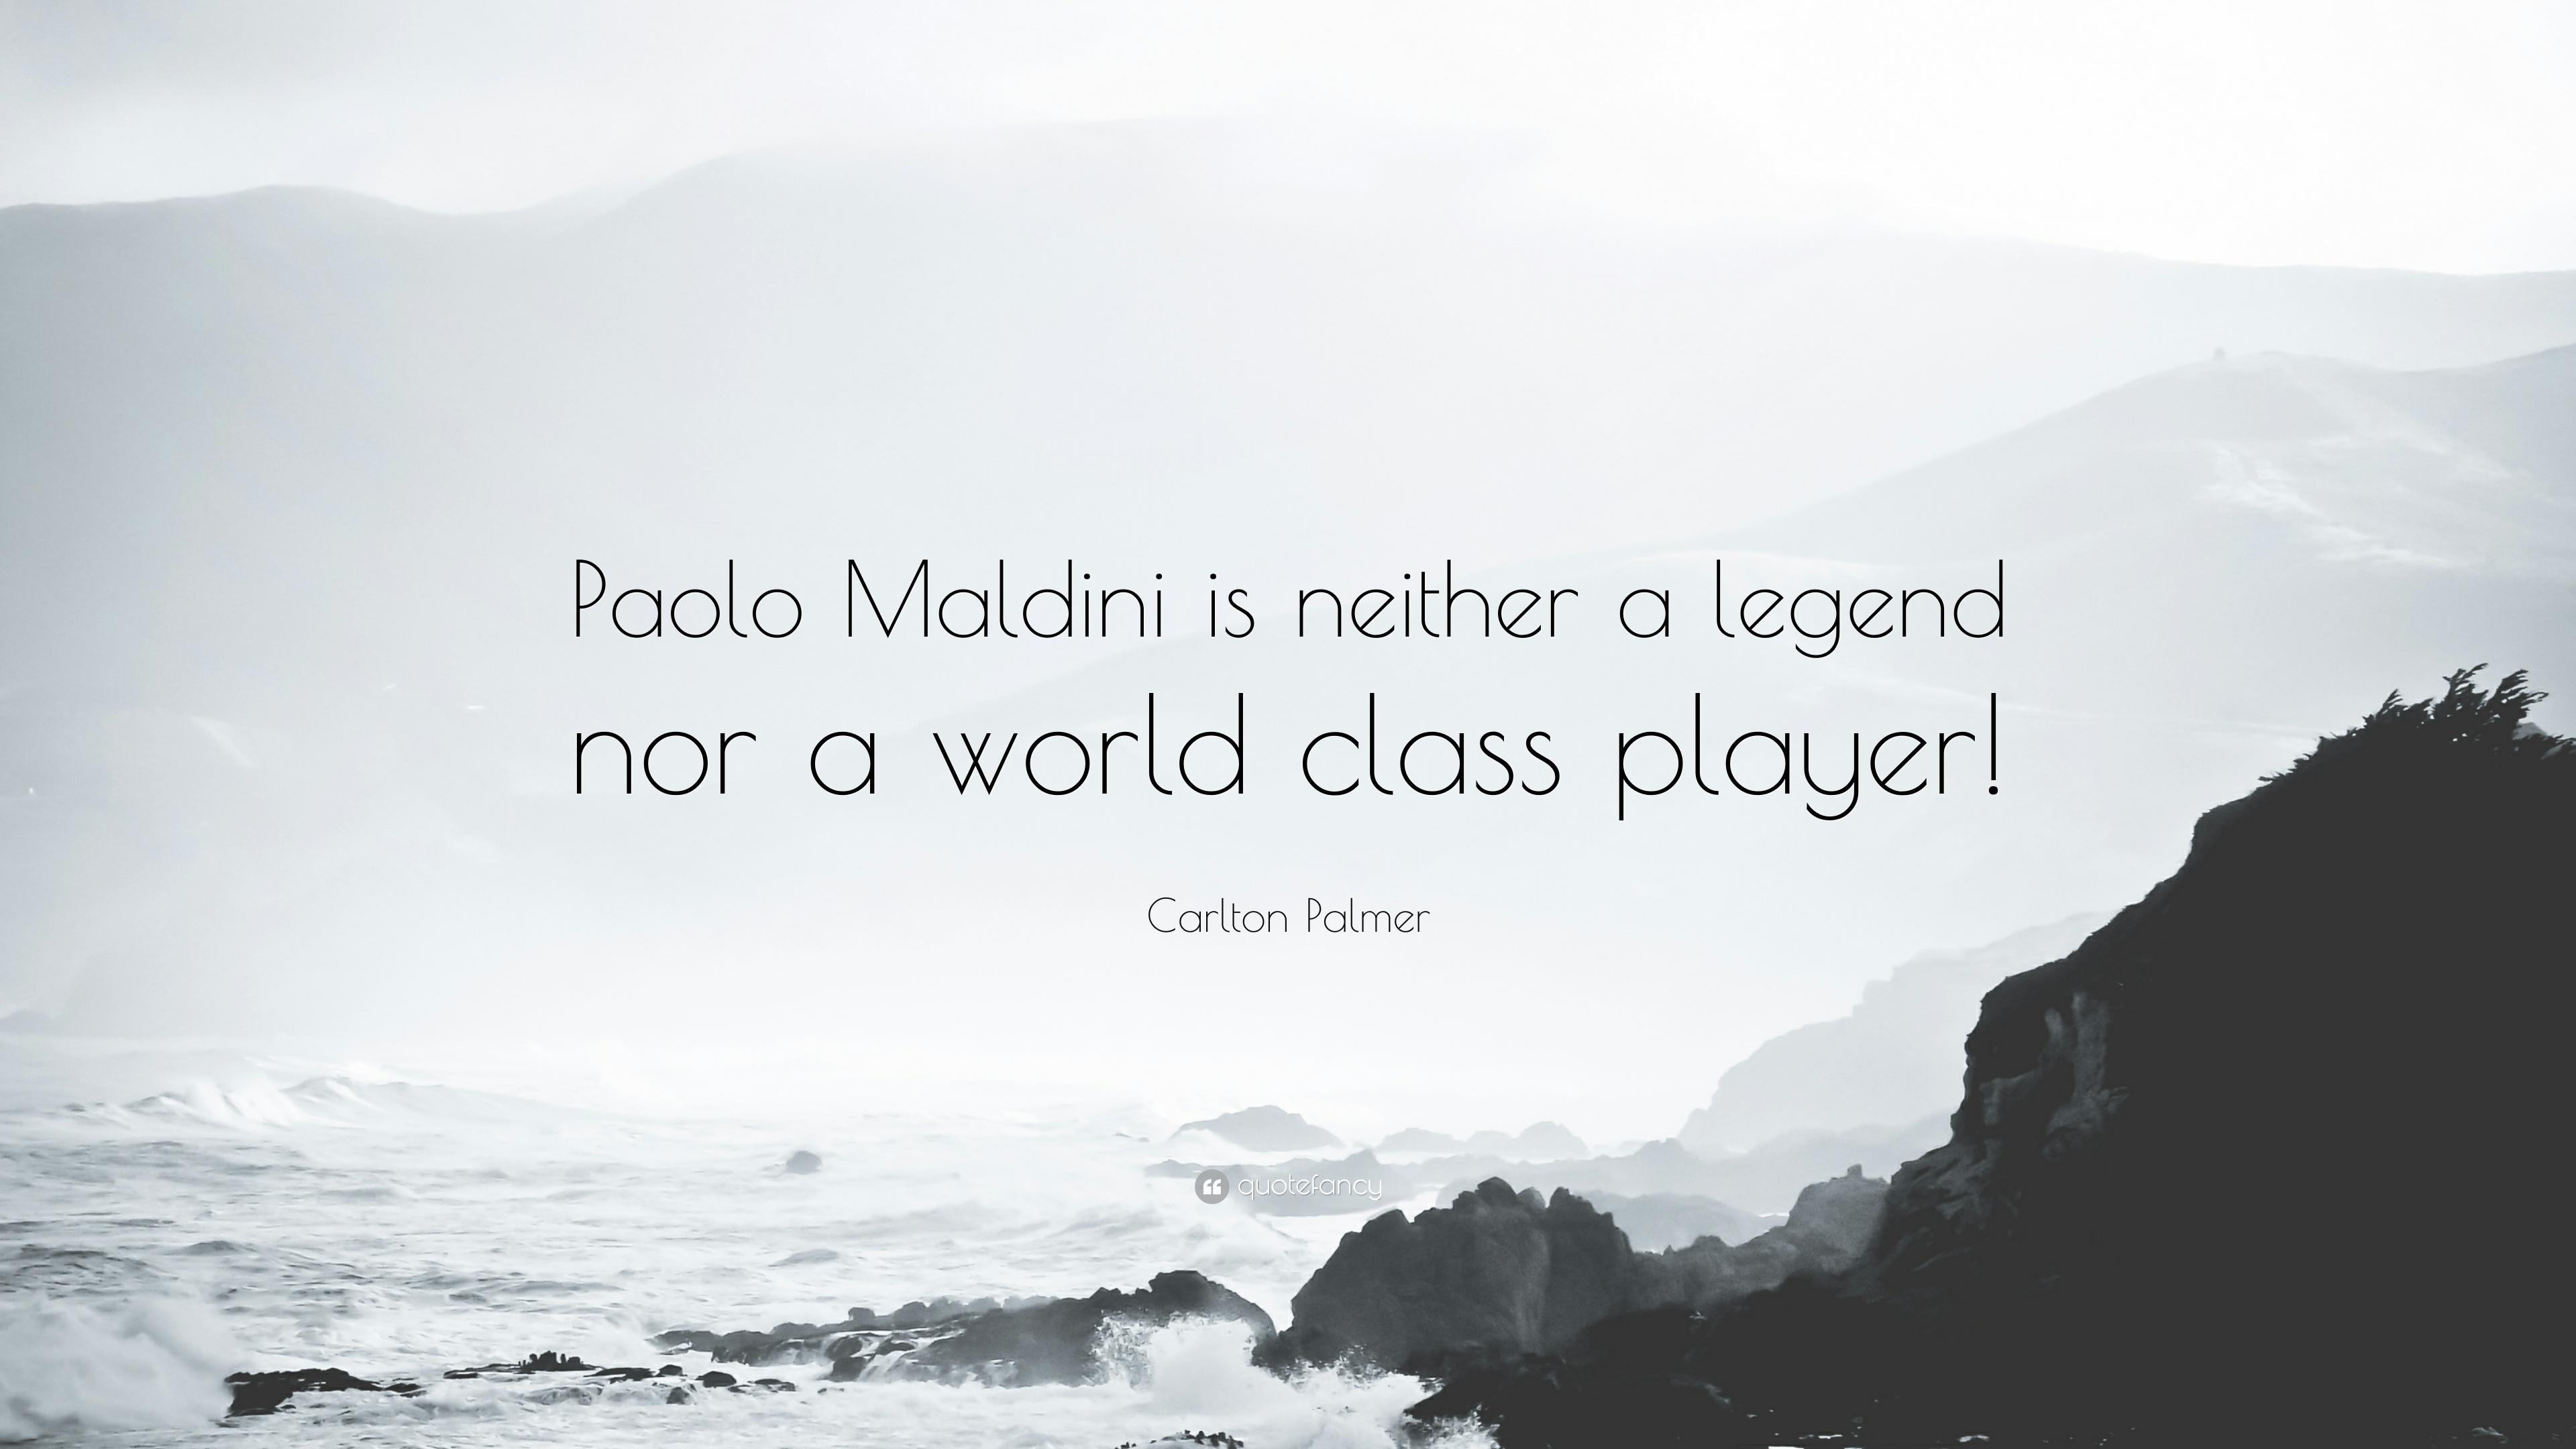 Carlton Palmer Quote: “Paolo Maldini is neither a legend nor a world